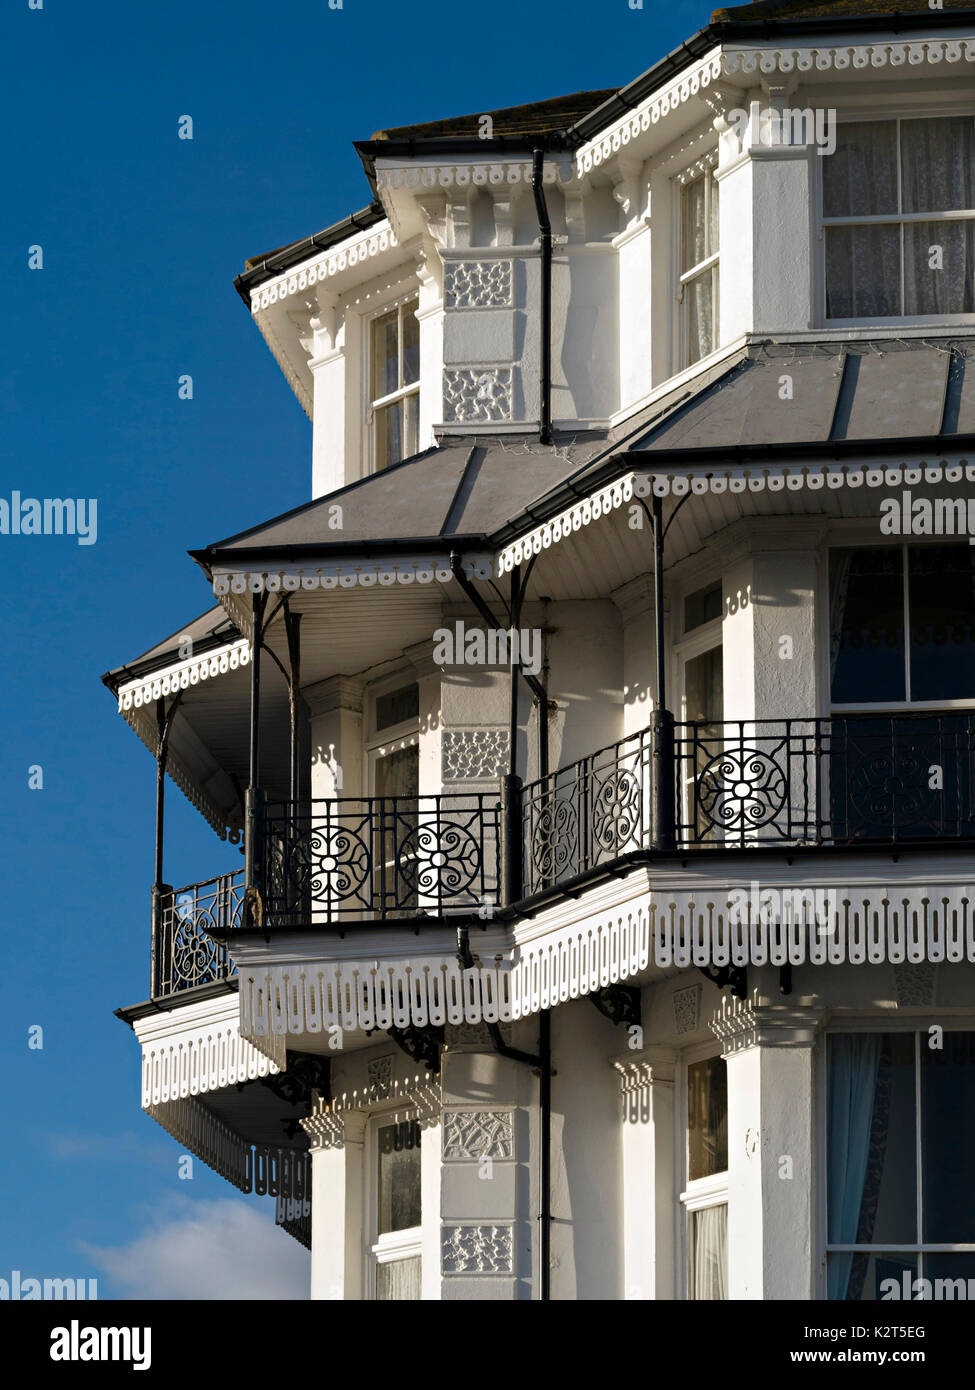 Reich verzierten viktorianischen Balkone, schmiedeeiserne Geländer Geländer und Architektur, East Beach Hotel Royal Parade, Eastbourne, East Sussex, England, UK. Stockfoto